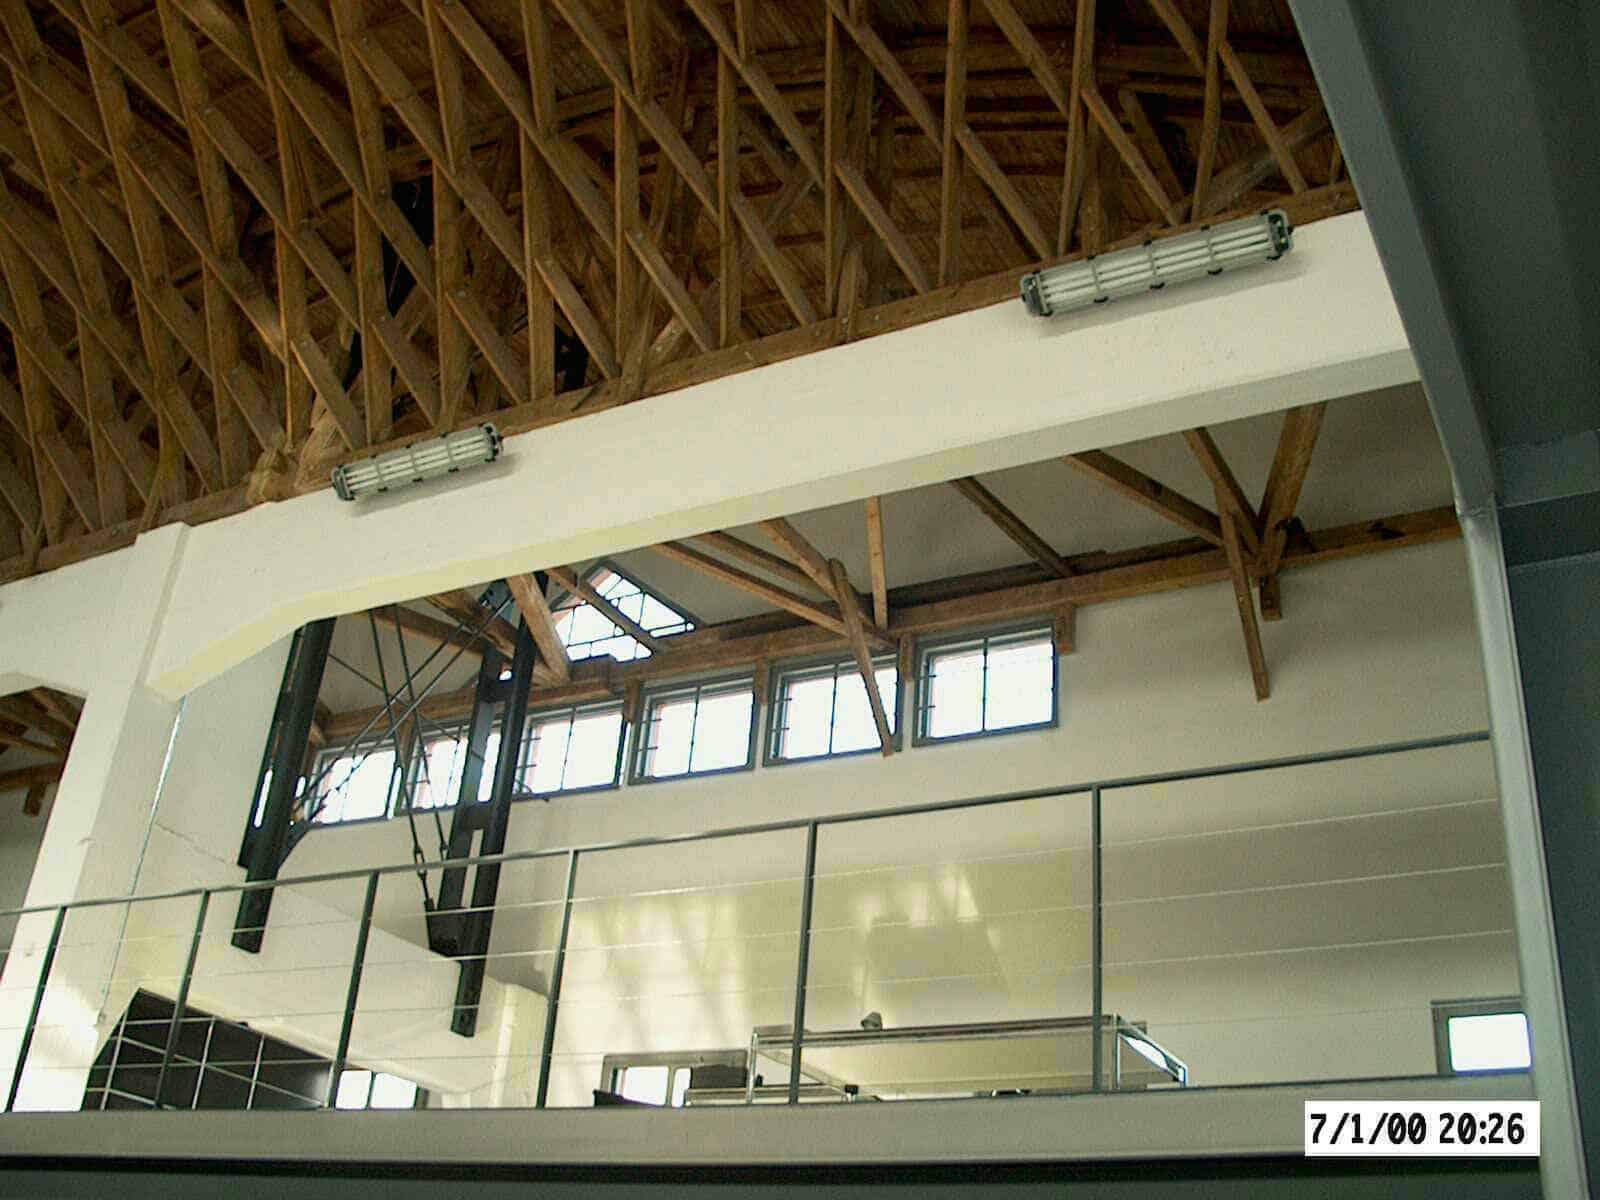 Es ist ein Detailfoto vom Dach der Zollinger Halle zu sehen. Das Dach ist aus einer speziellen Holzkonstruktion gabaut.